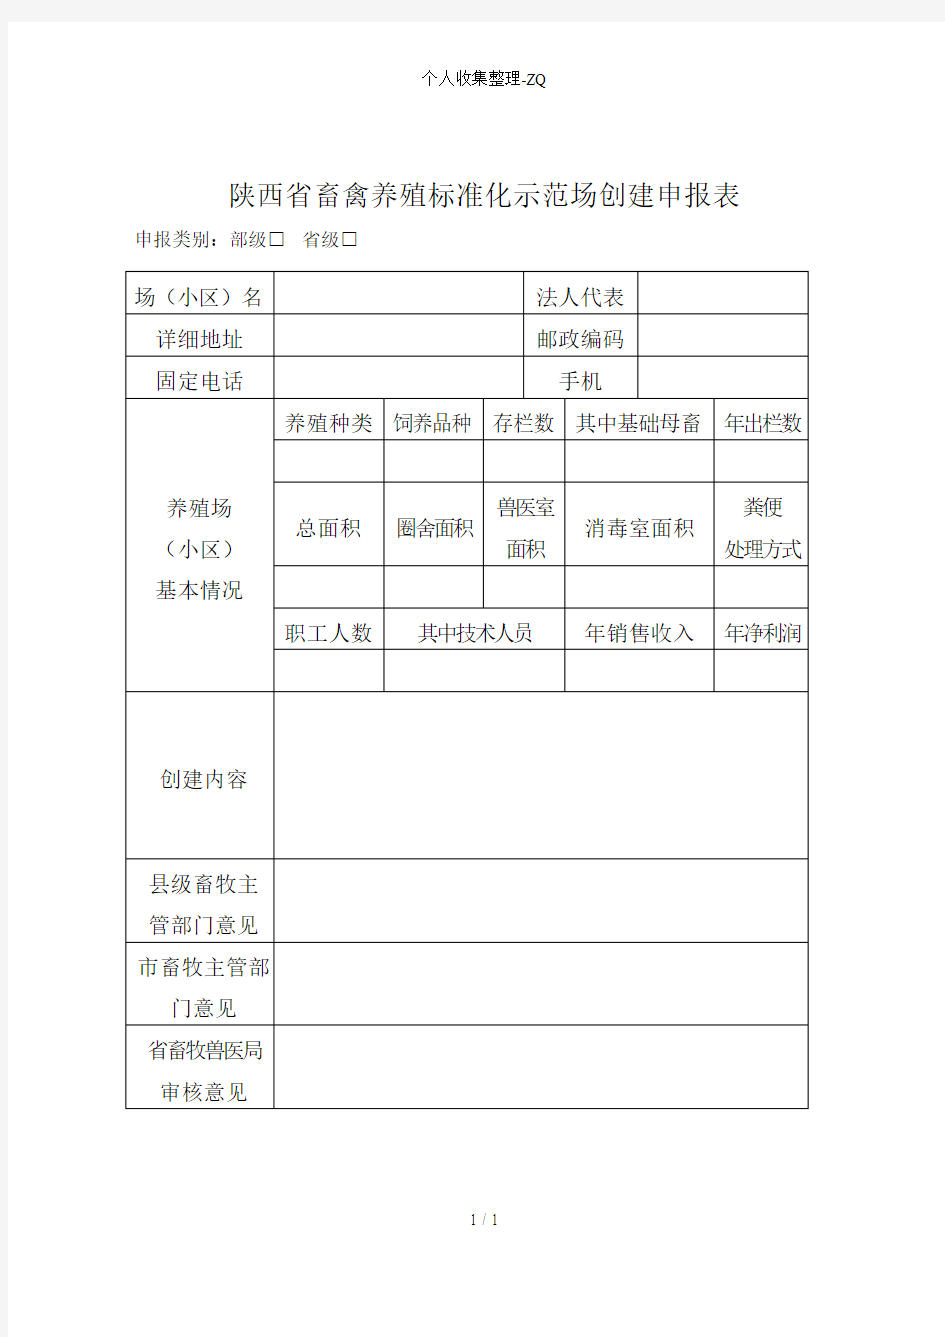 陕西省畜禽养殖标准化示范场创建申报表